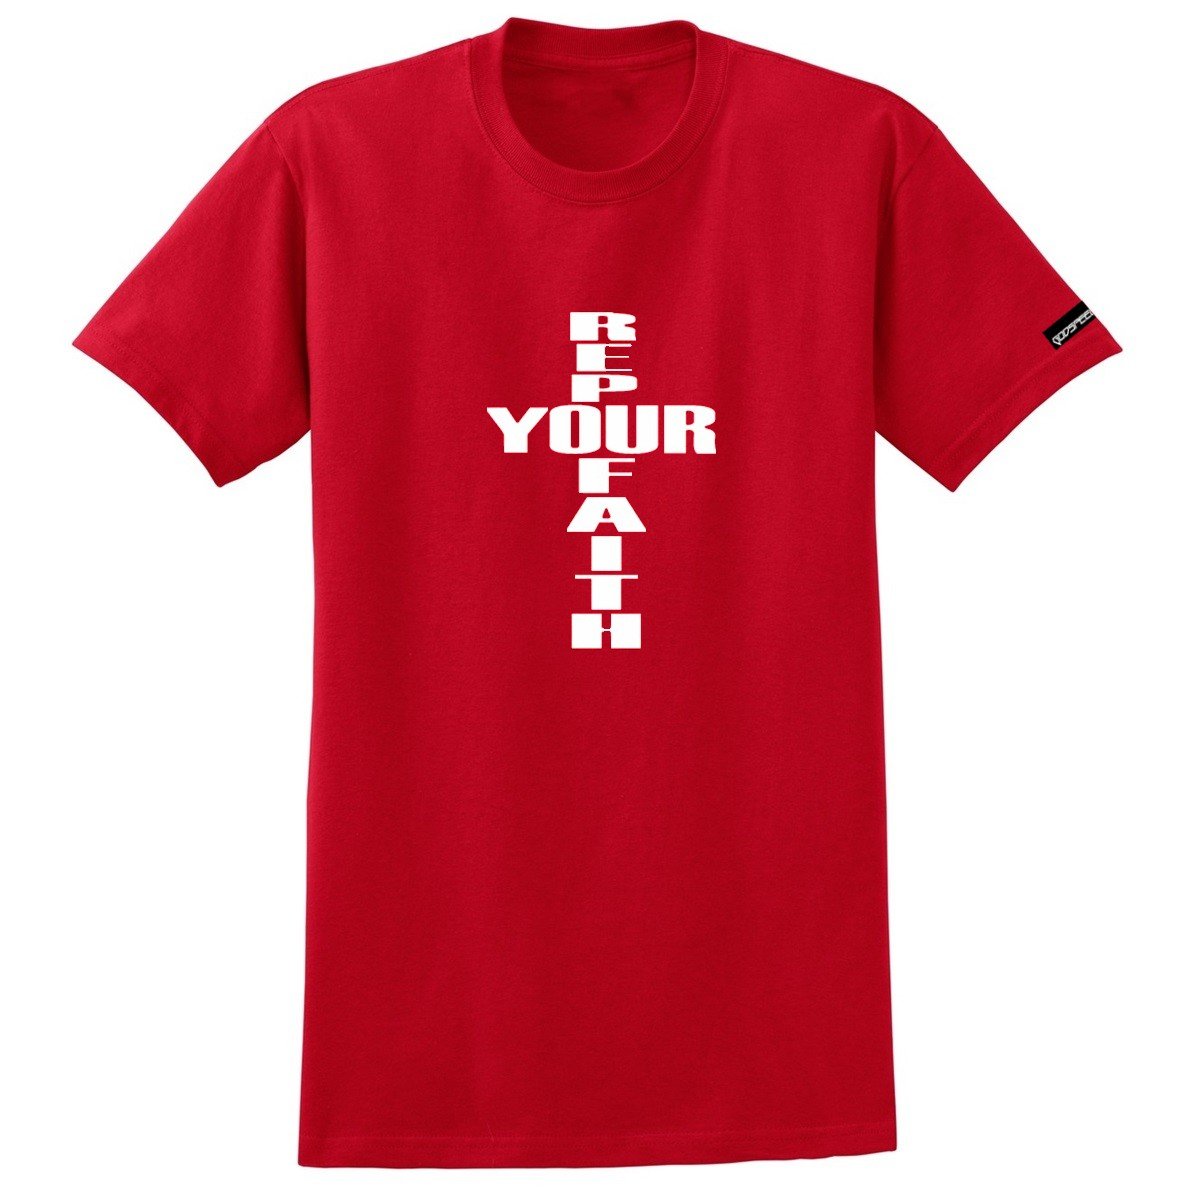 Rep your faith shirt Red04.jpg